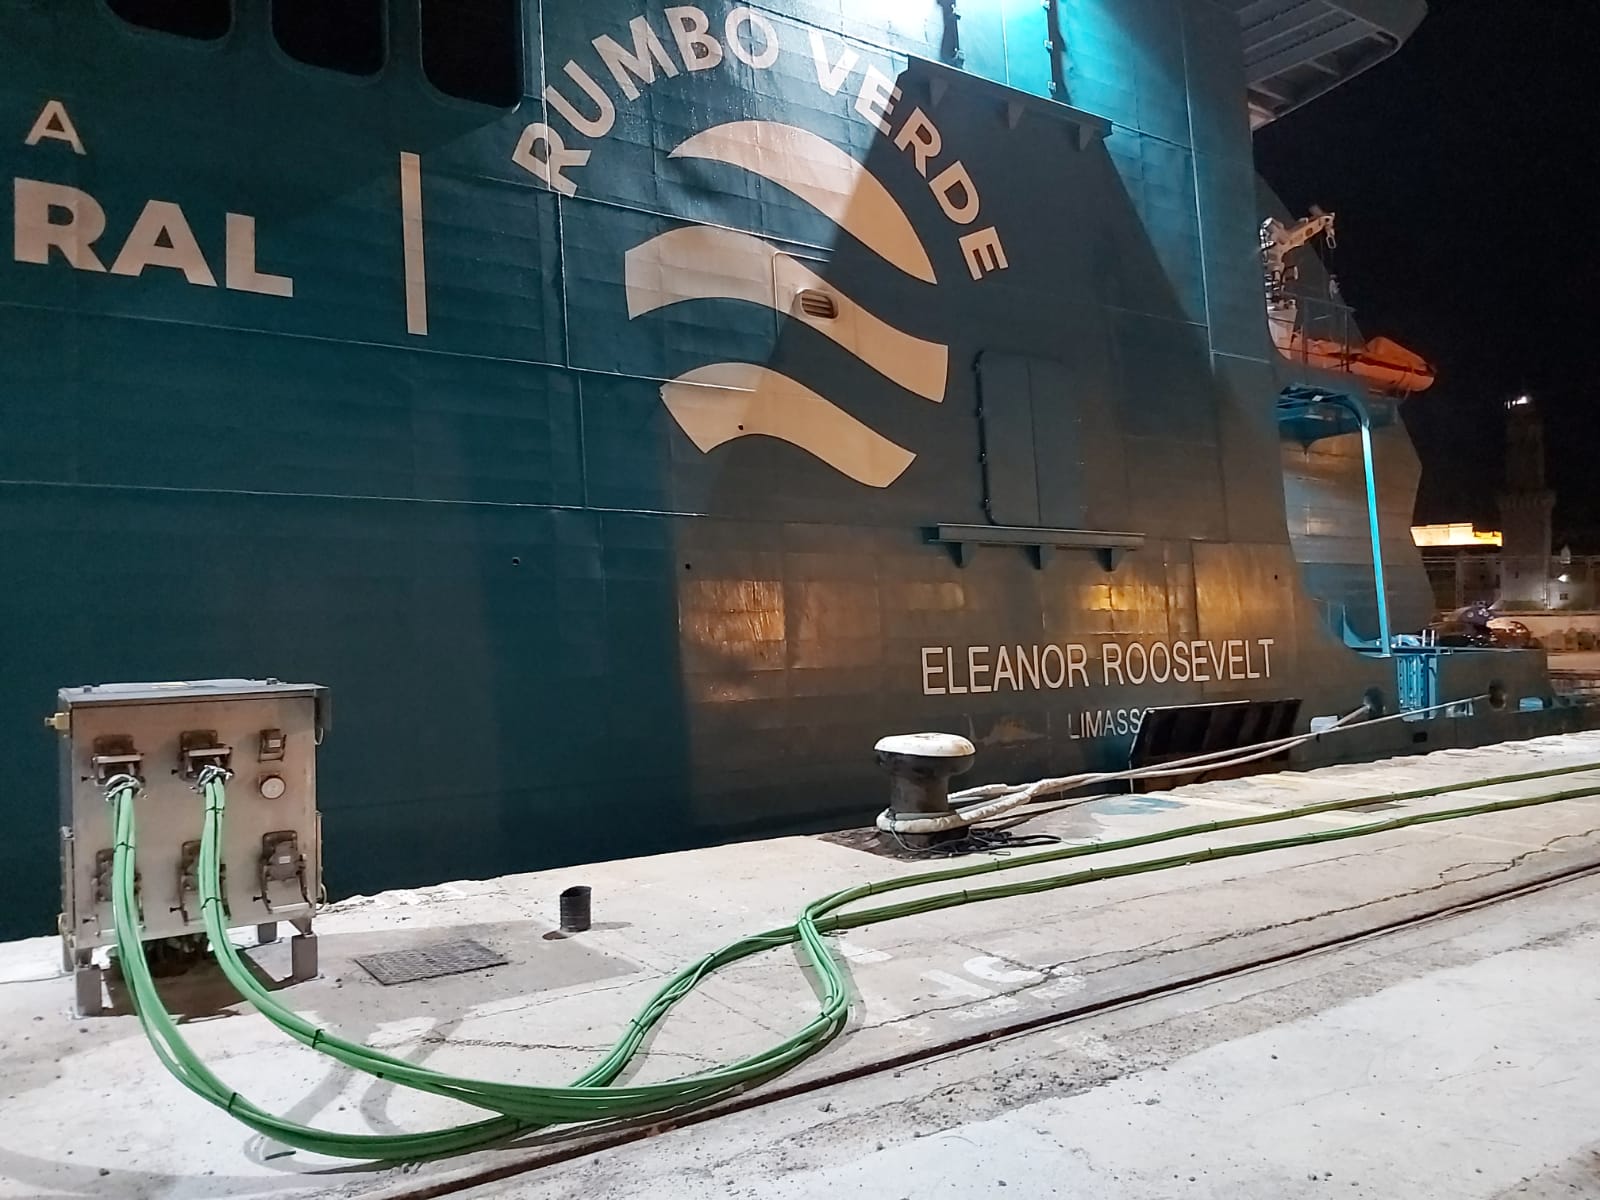 Comienzan las pruebas del sistema de conexión eléctrica en tierra para ferris del puerto de Palma